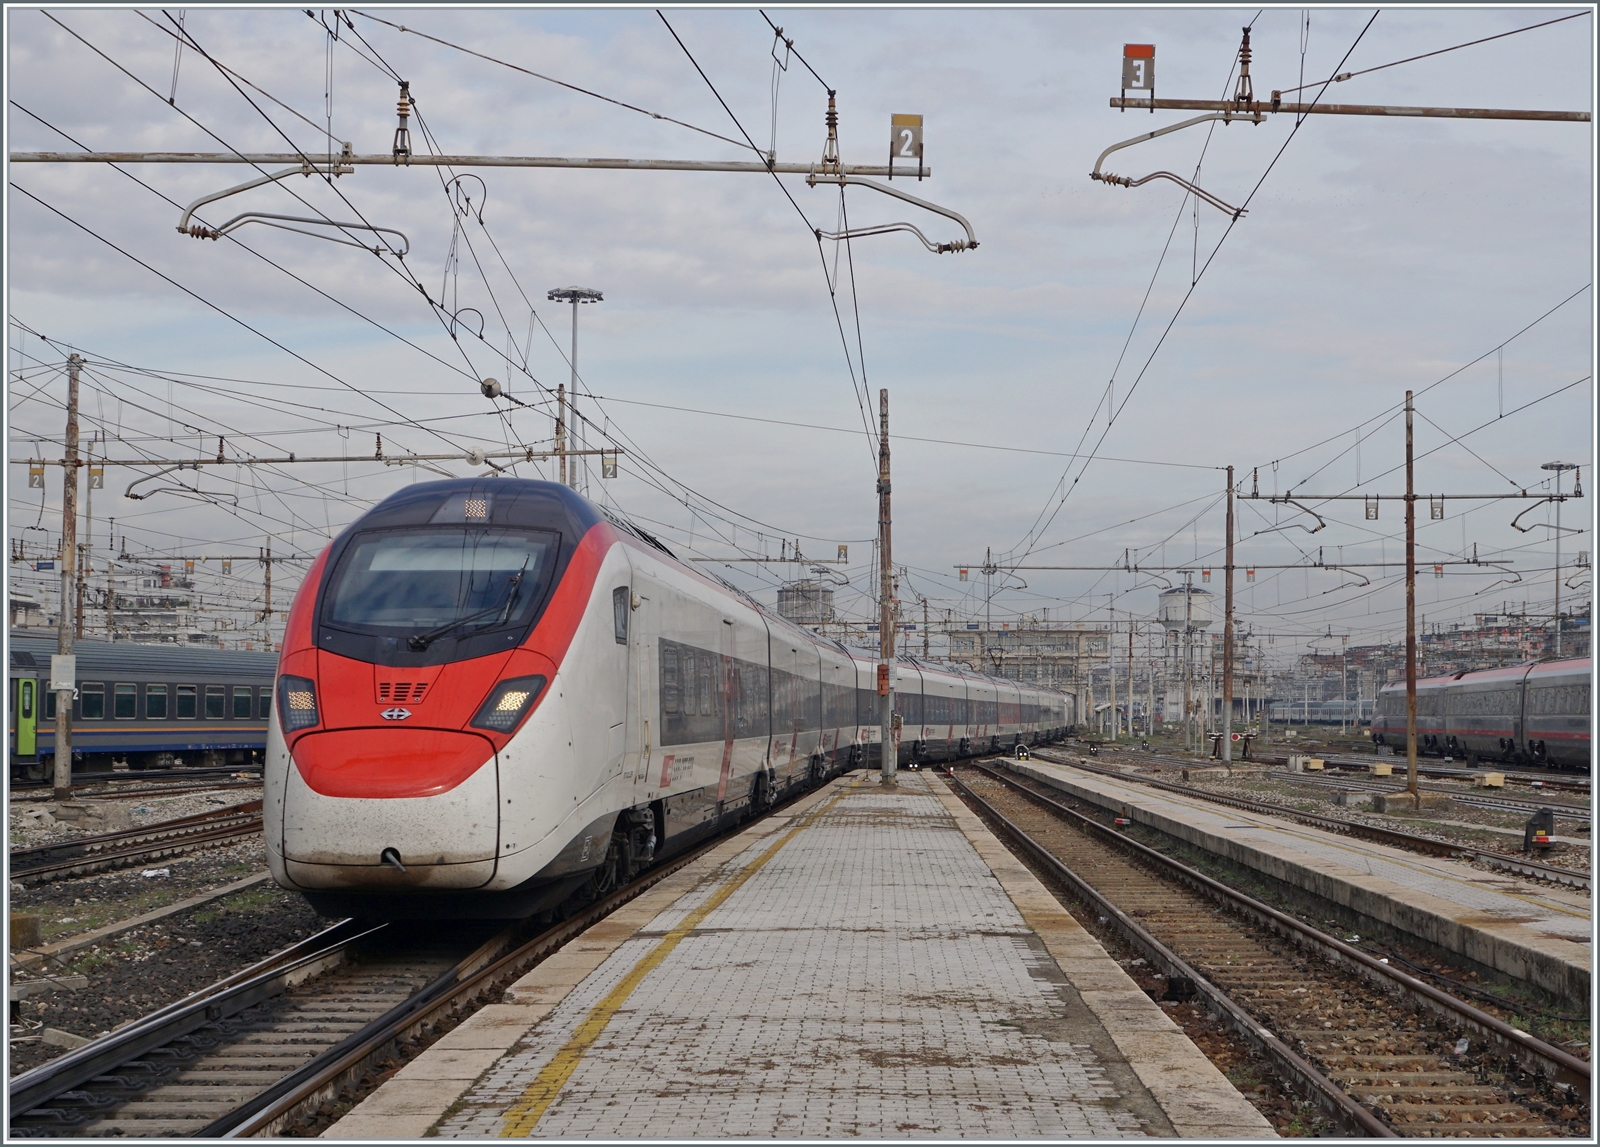 Ein SBB RABe 501  Giruno  von Zürich erreicht sein Ziel Milano Centrale. 

8. November 2022